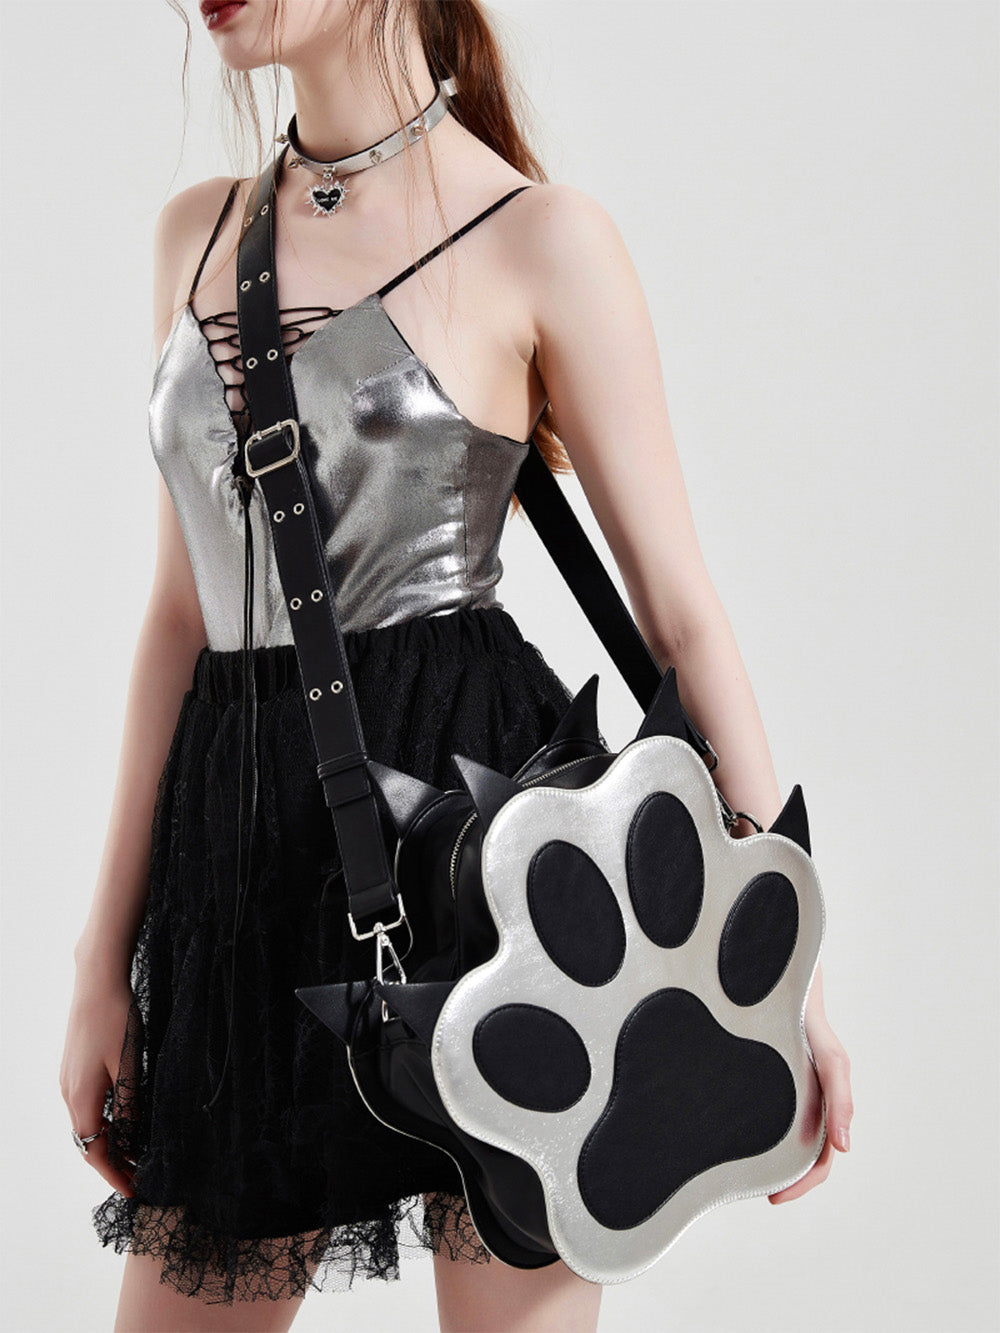 MUKTANK x WHITEHOLE Rebllious Dog Paw Shaped Leather Backpack